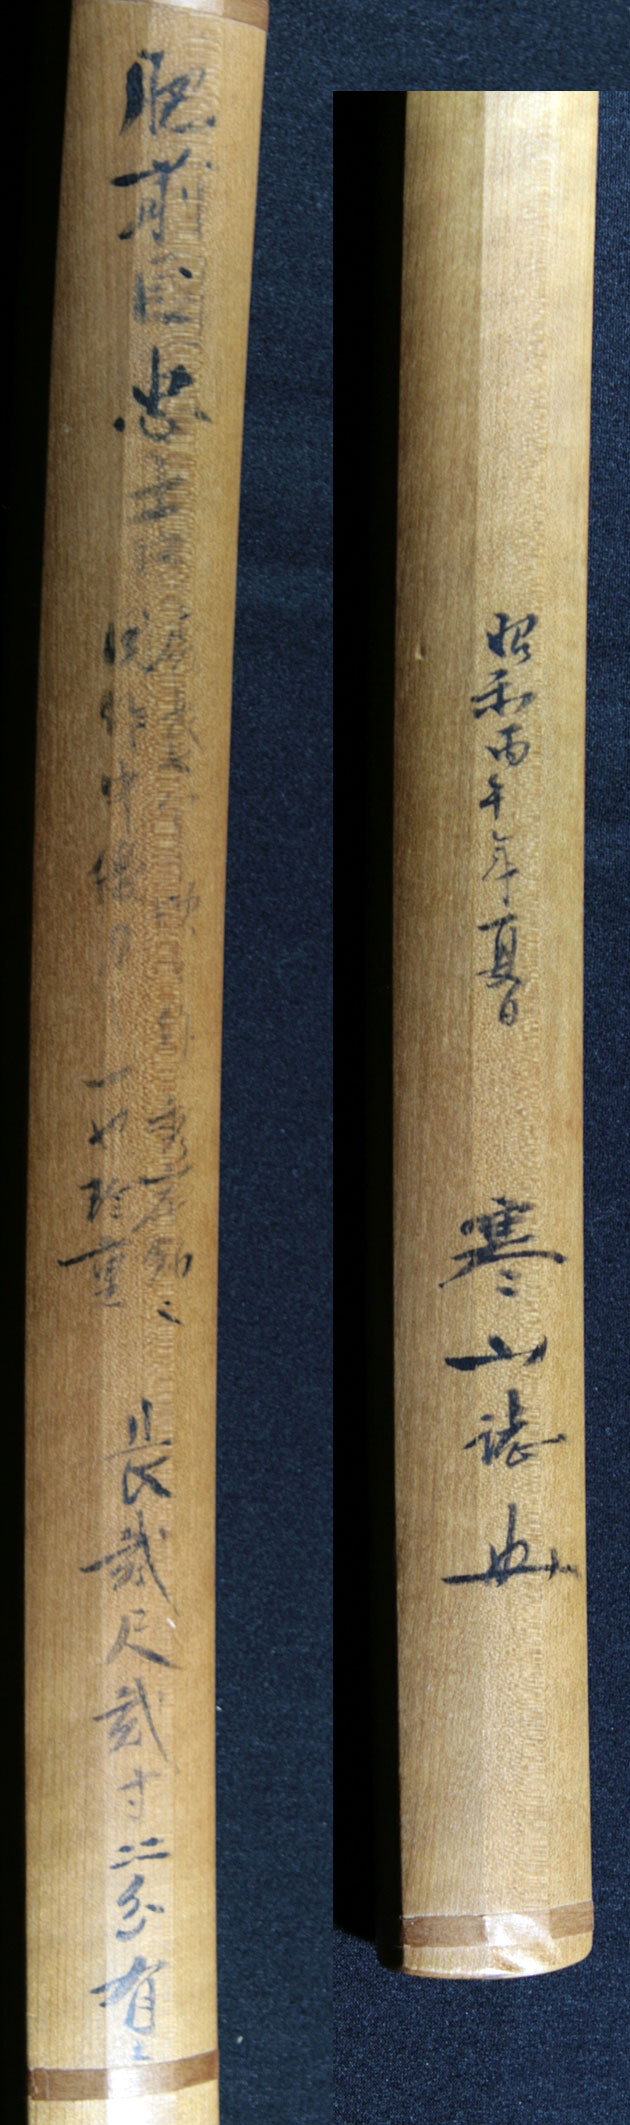 刀 肥前初代忠吉 慶長10年[F00054]｜刀剣や刀の販売なら日本刀販売専門 